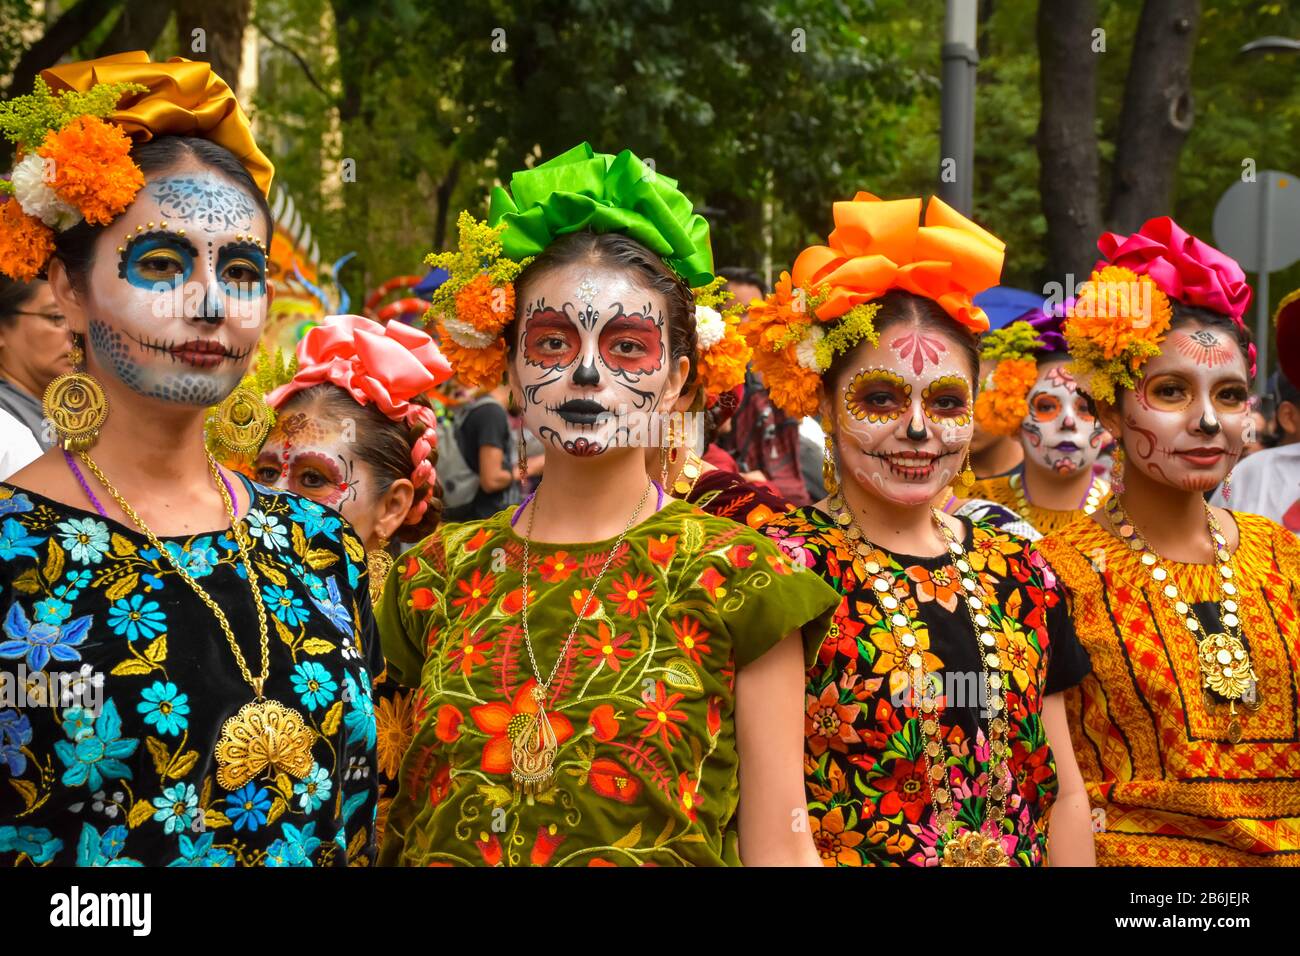 Ciudad de México, México, ; 26 2019 de octubre: Niñas vestidas como catrinas  con trajes típicos en la celebración del día de los muertos en México  Fotografía de stock - Alamy